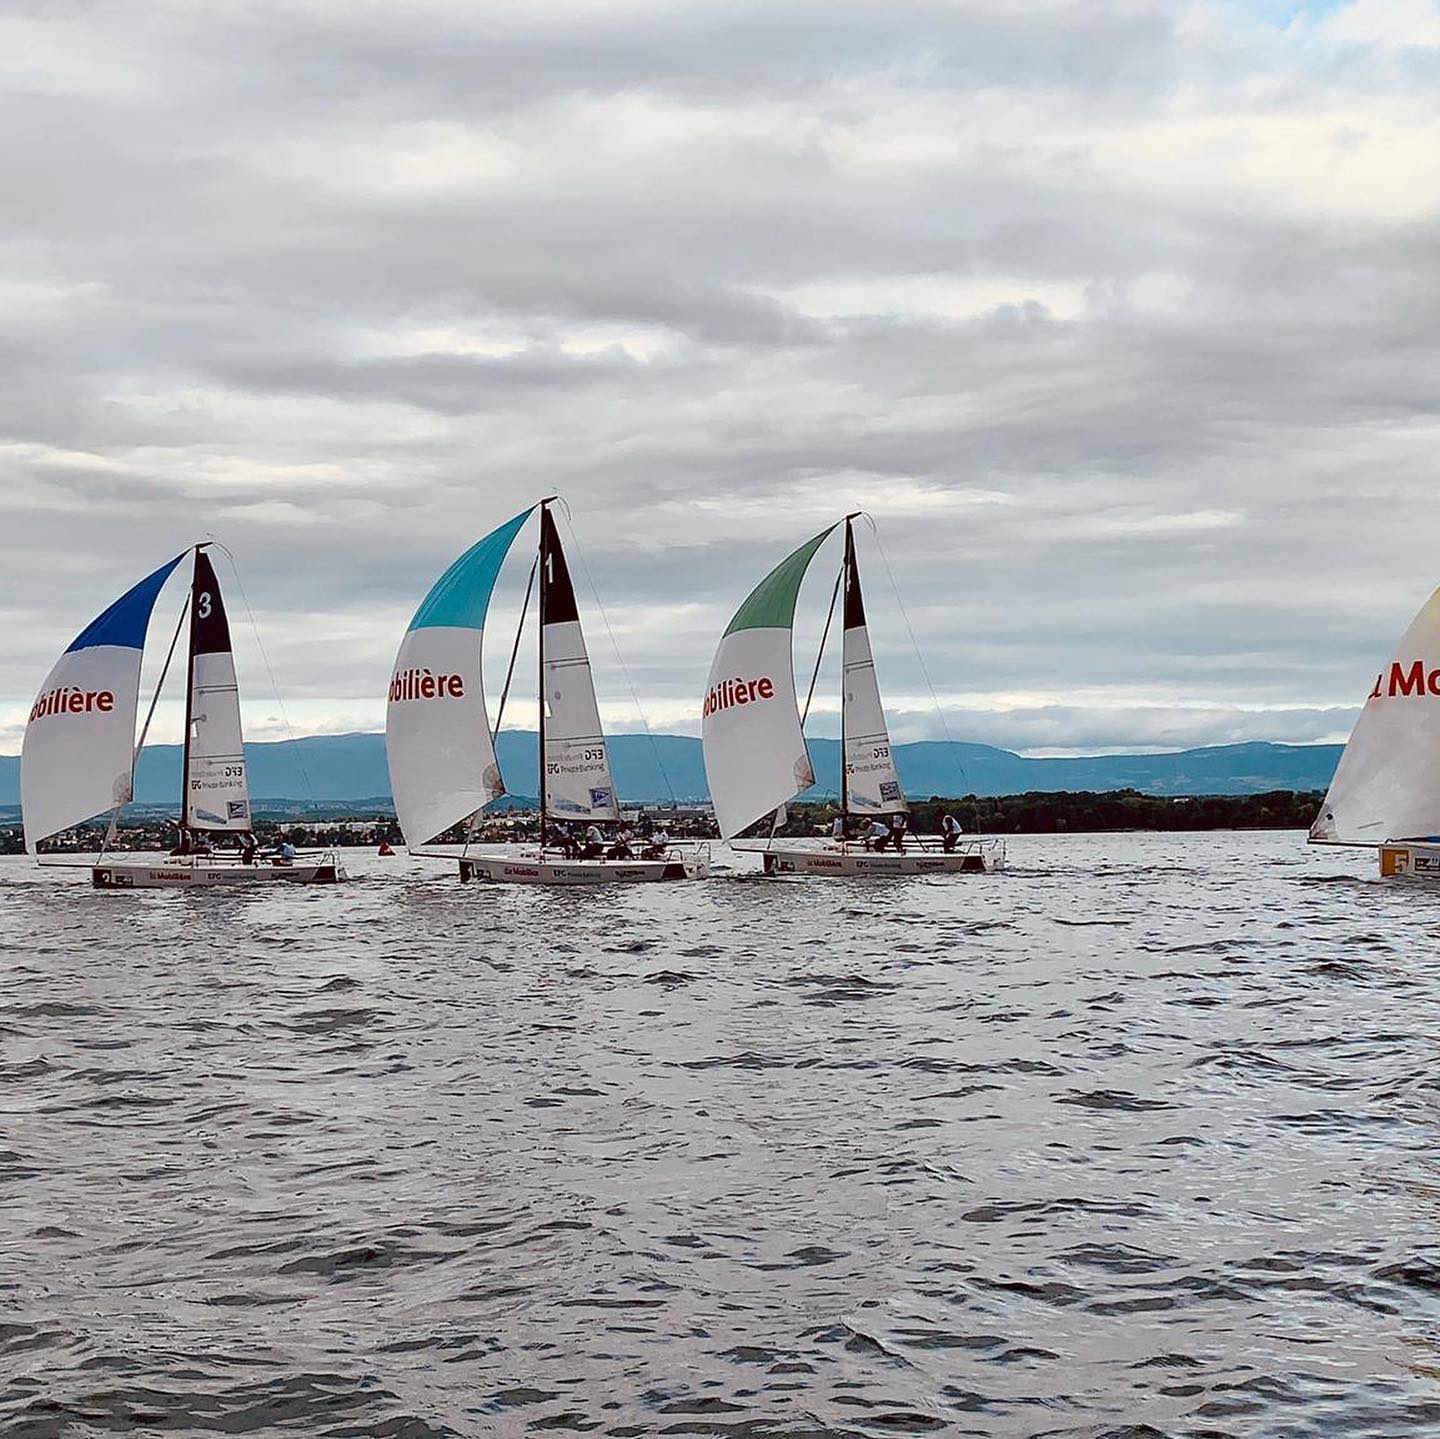  J/70  Swiss Sailing Challenge League  Lausanne  Final results